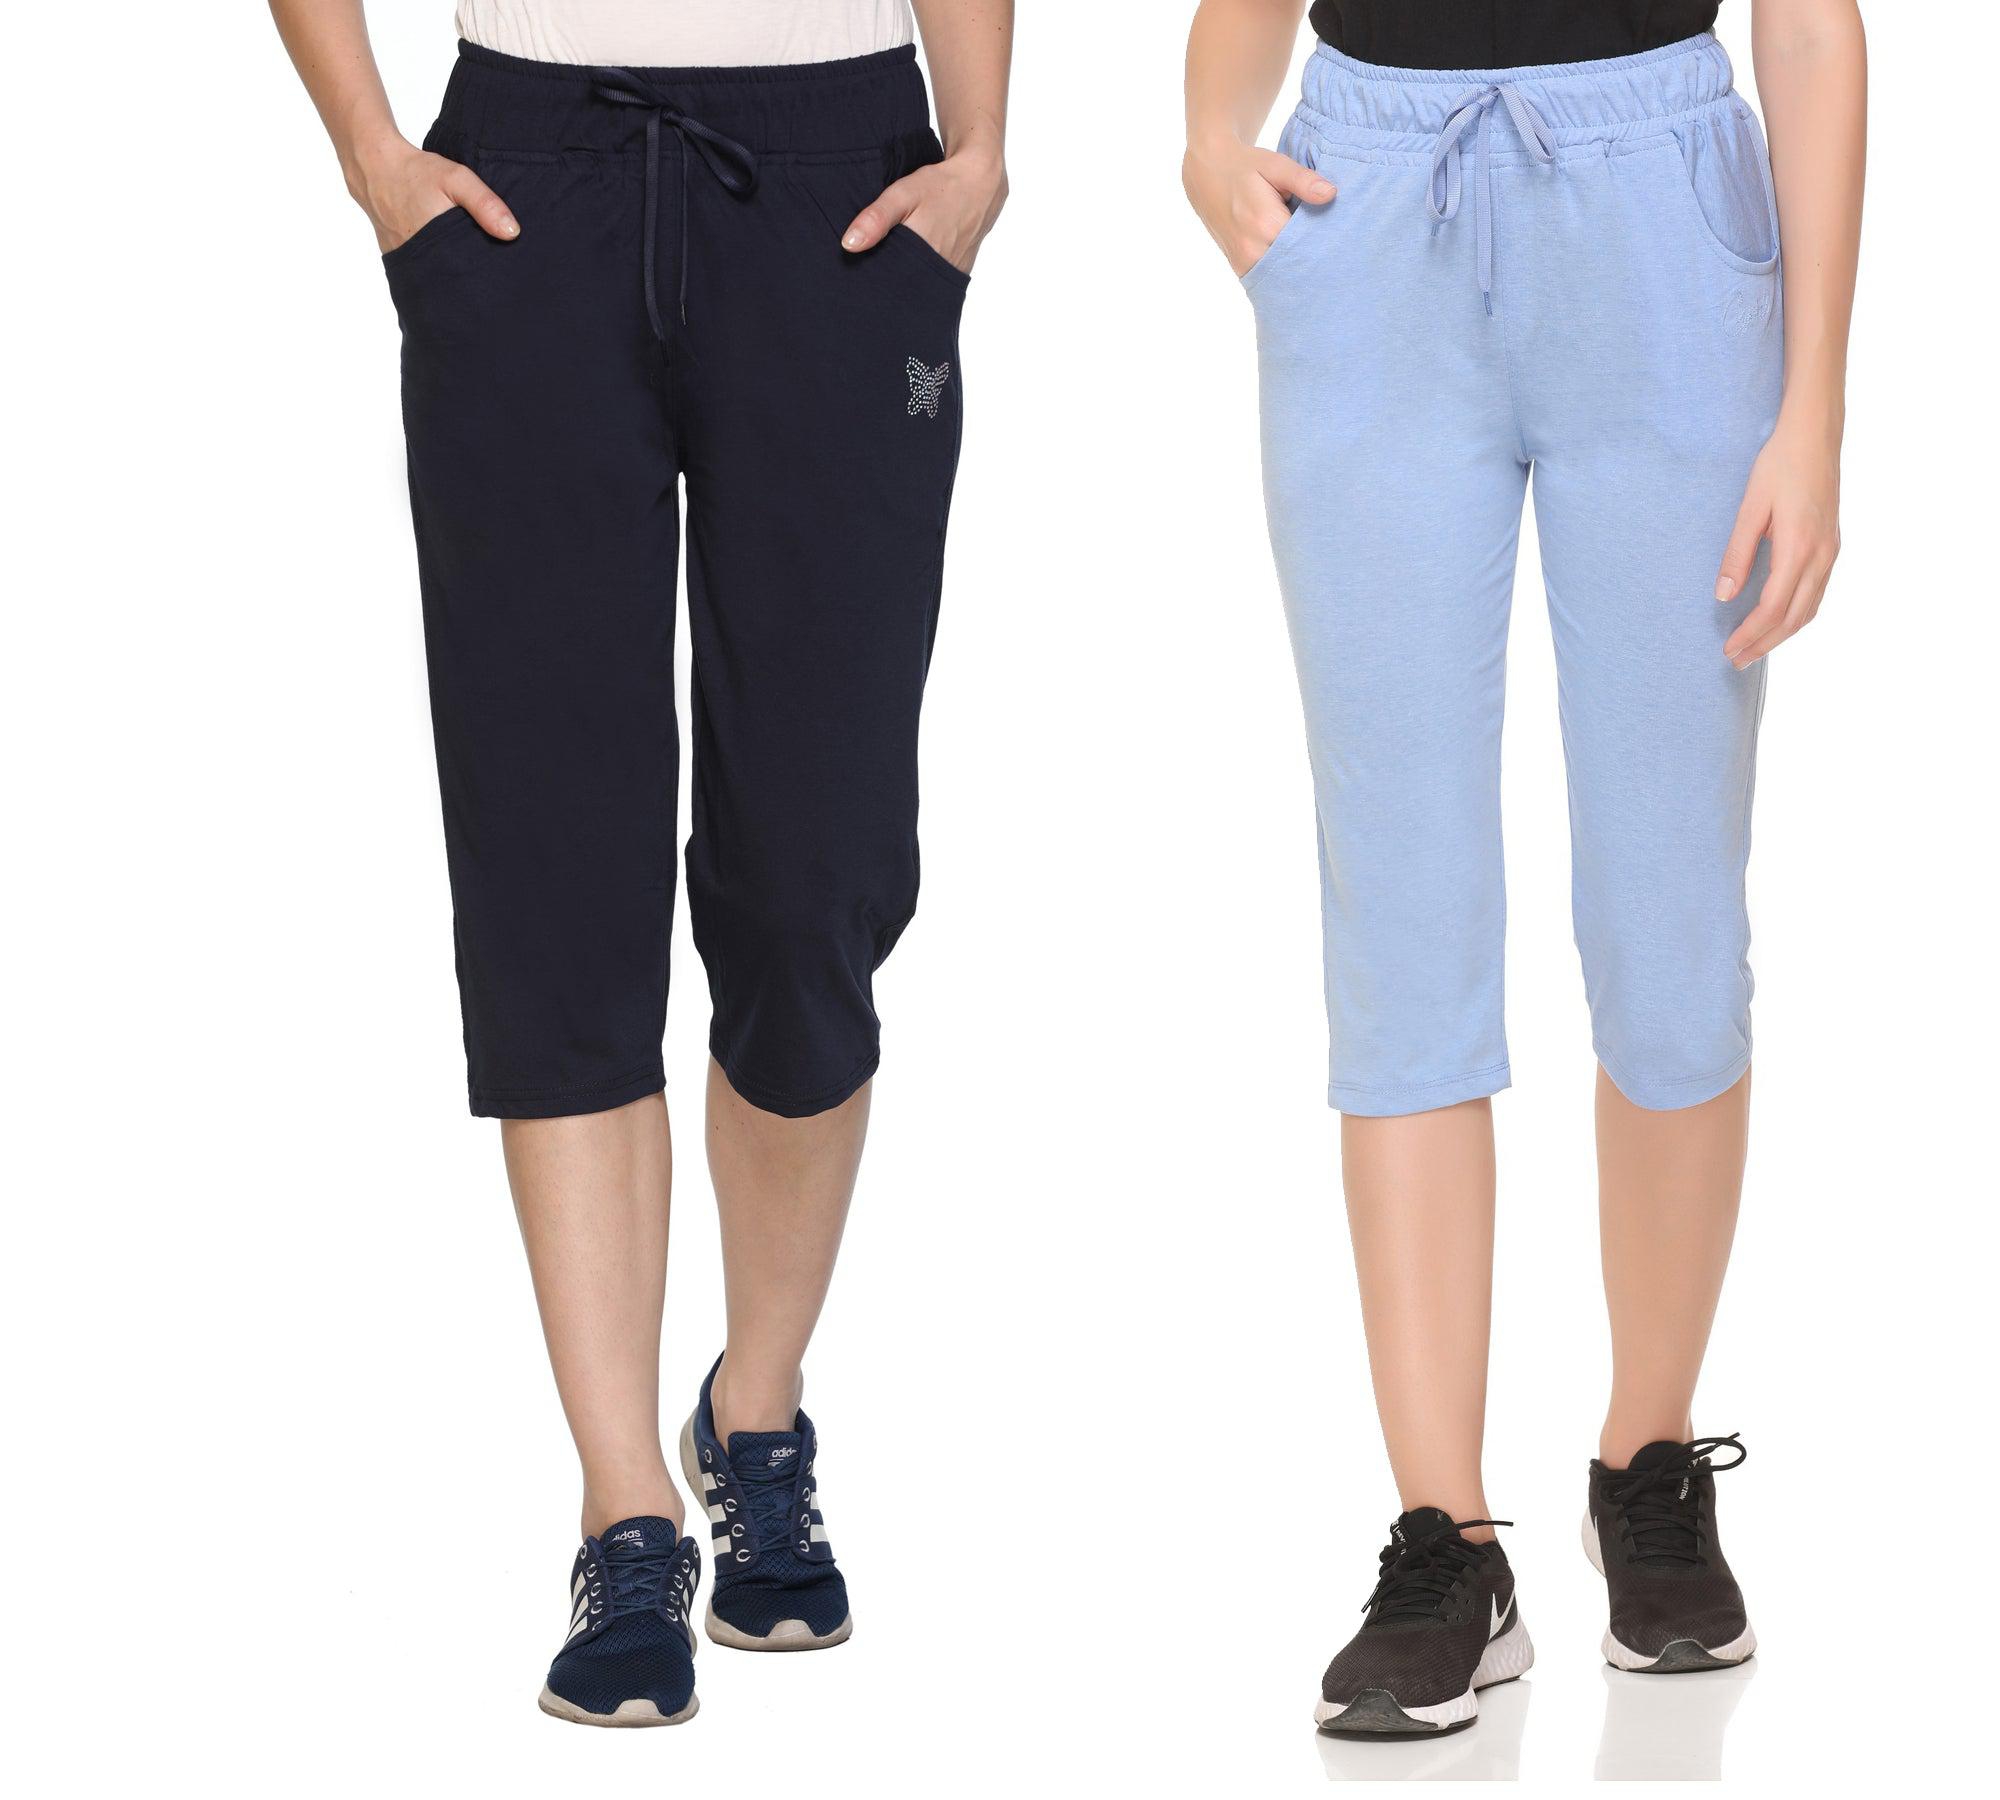 Buy Grey Shorts & 3/4ths for Boys by MUJI Online | Ajio.com